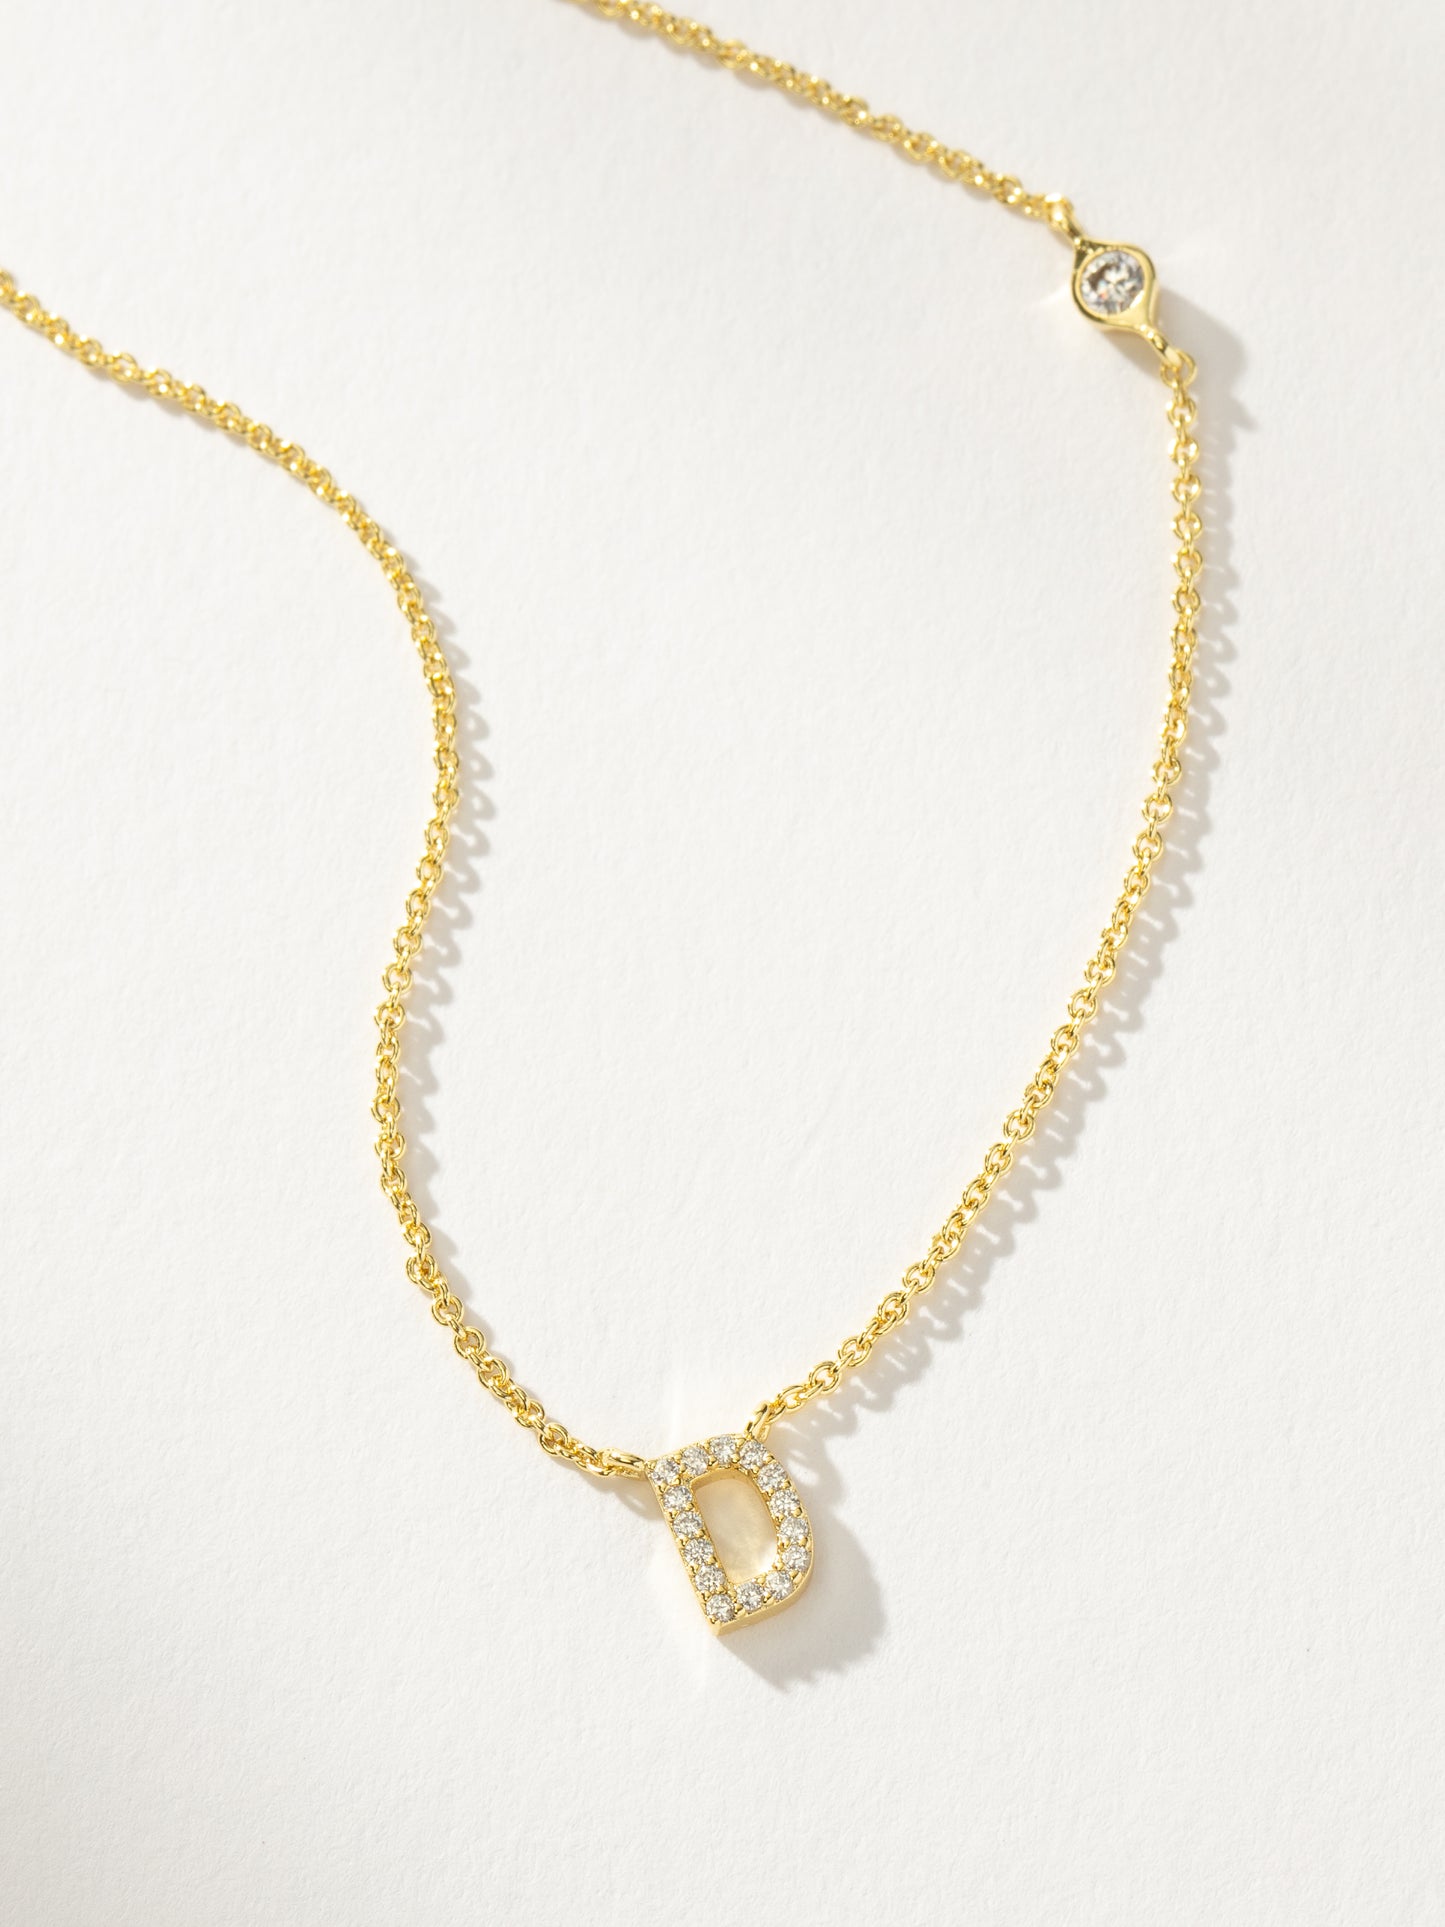 Pavé Initial Necklace | Gold D | Product Detail Image | Uncommon James